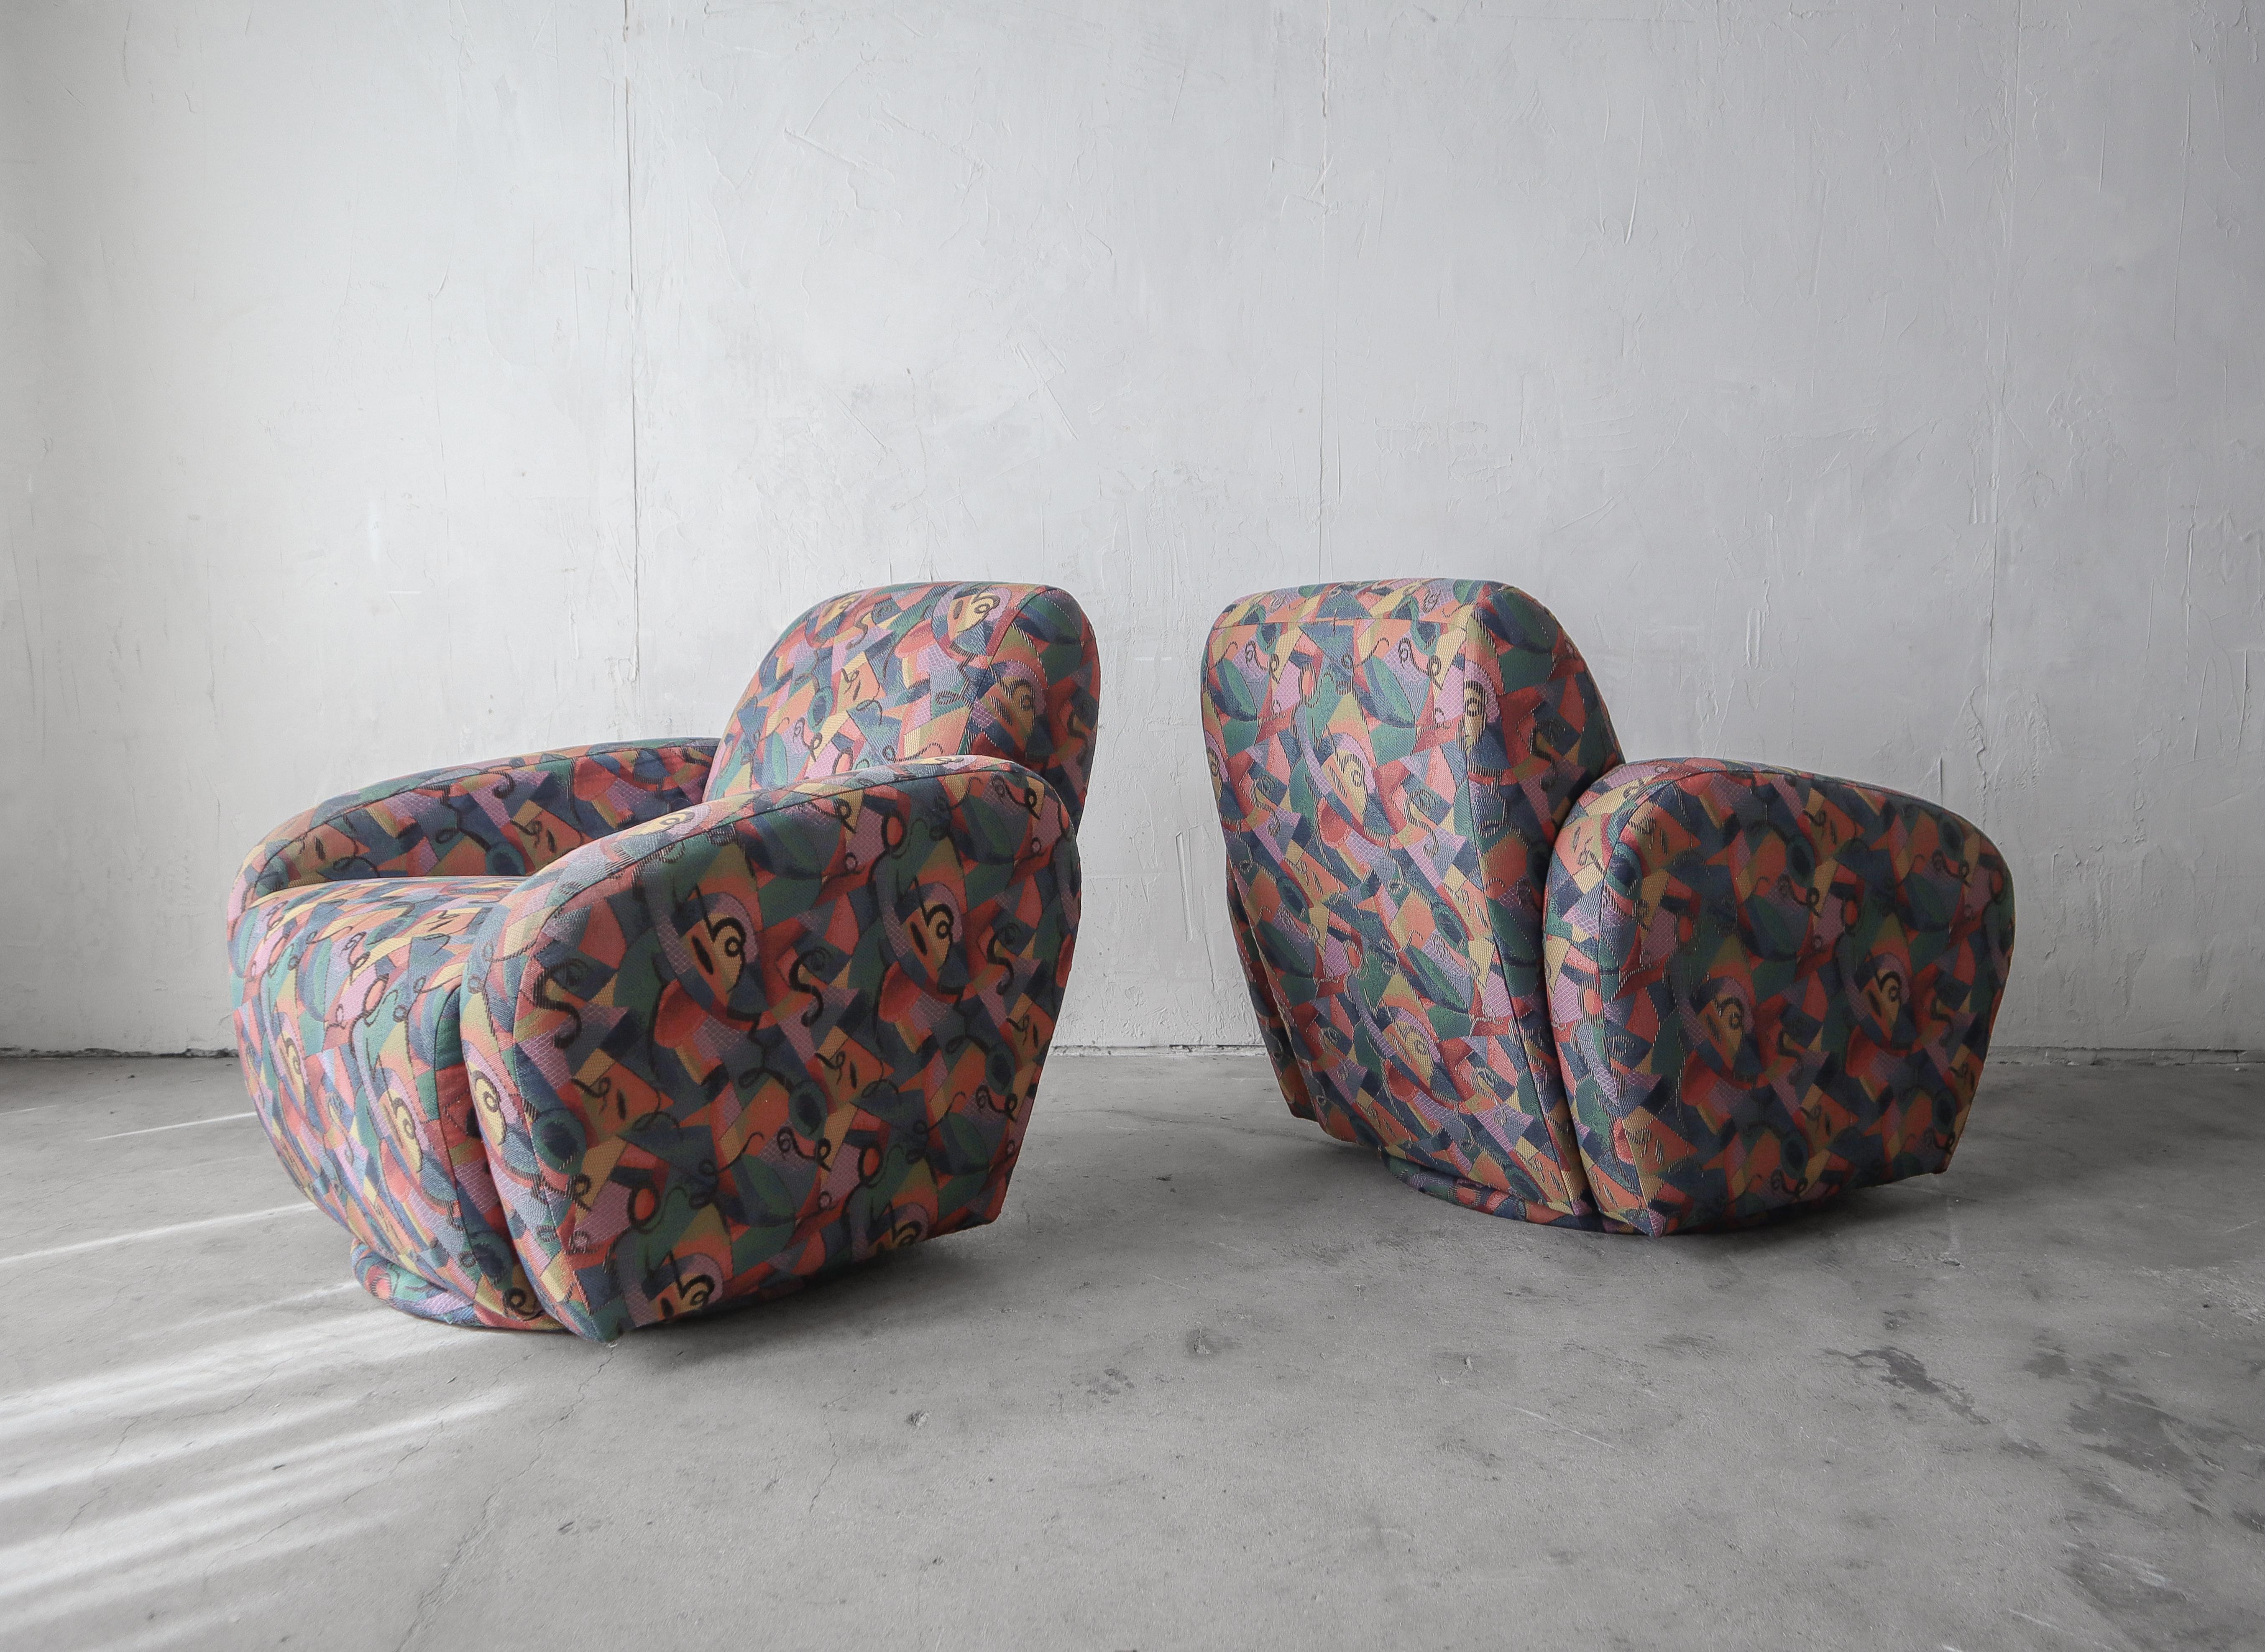 Une belle paire de chaises pivotantes post-modernes originales de Preview Furniture.

Les chaises sont toutes d'origine, laissées telles quelles.  La structure des chaises est saine et le tissu est en bon état et utilisable, sans dommages, taches ou